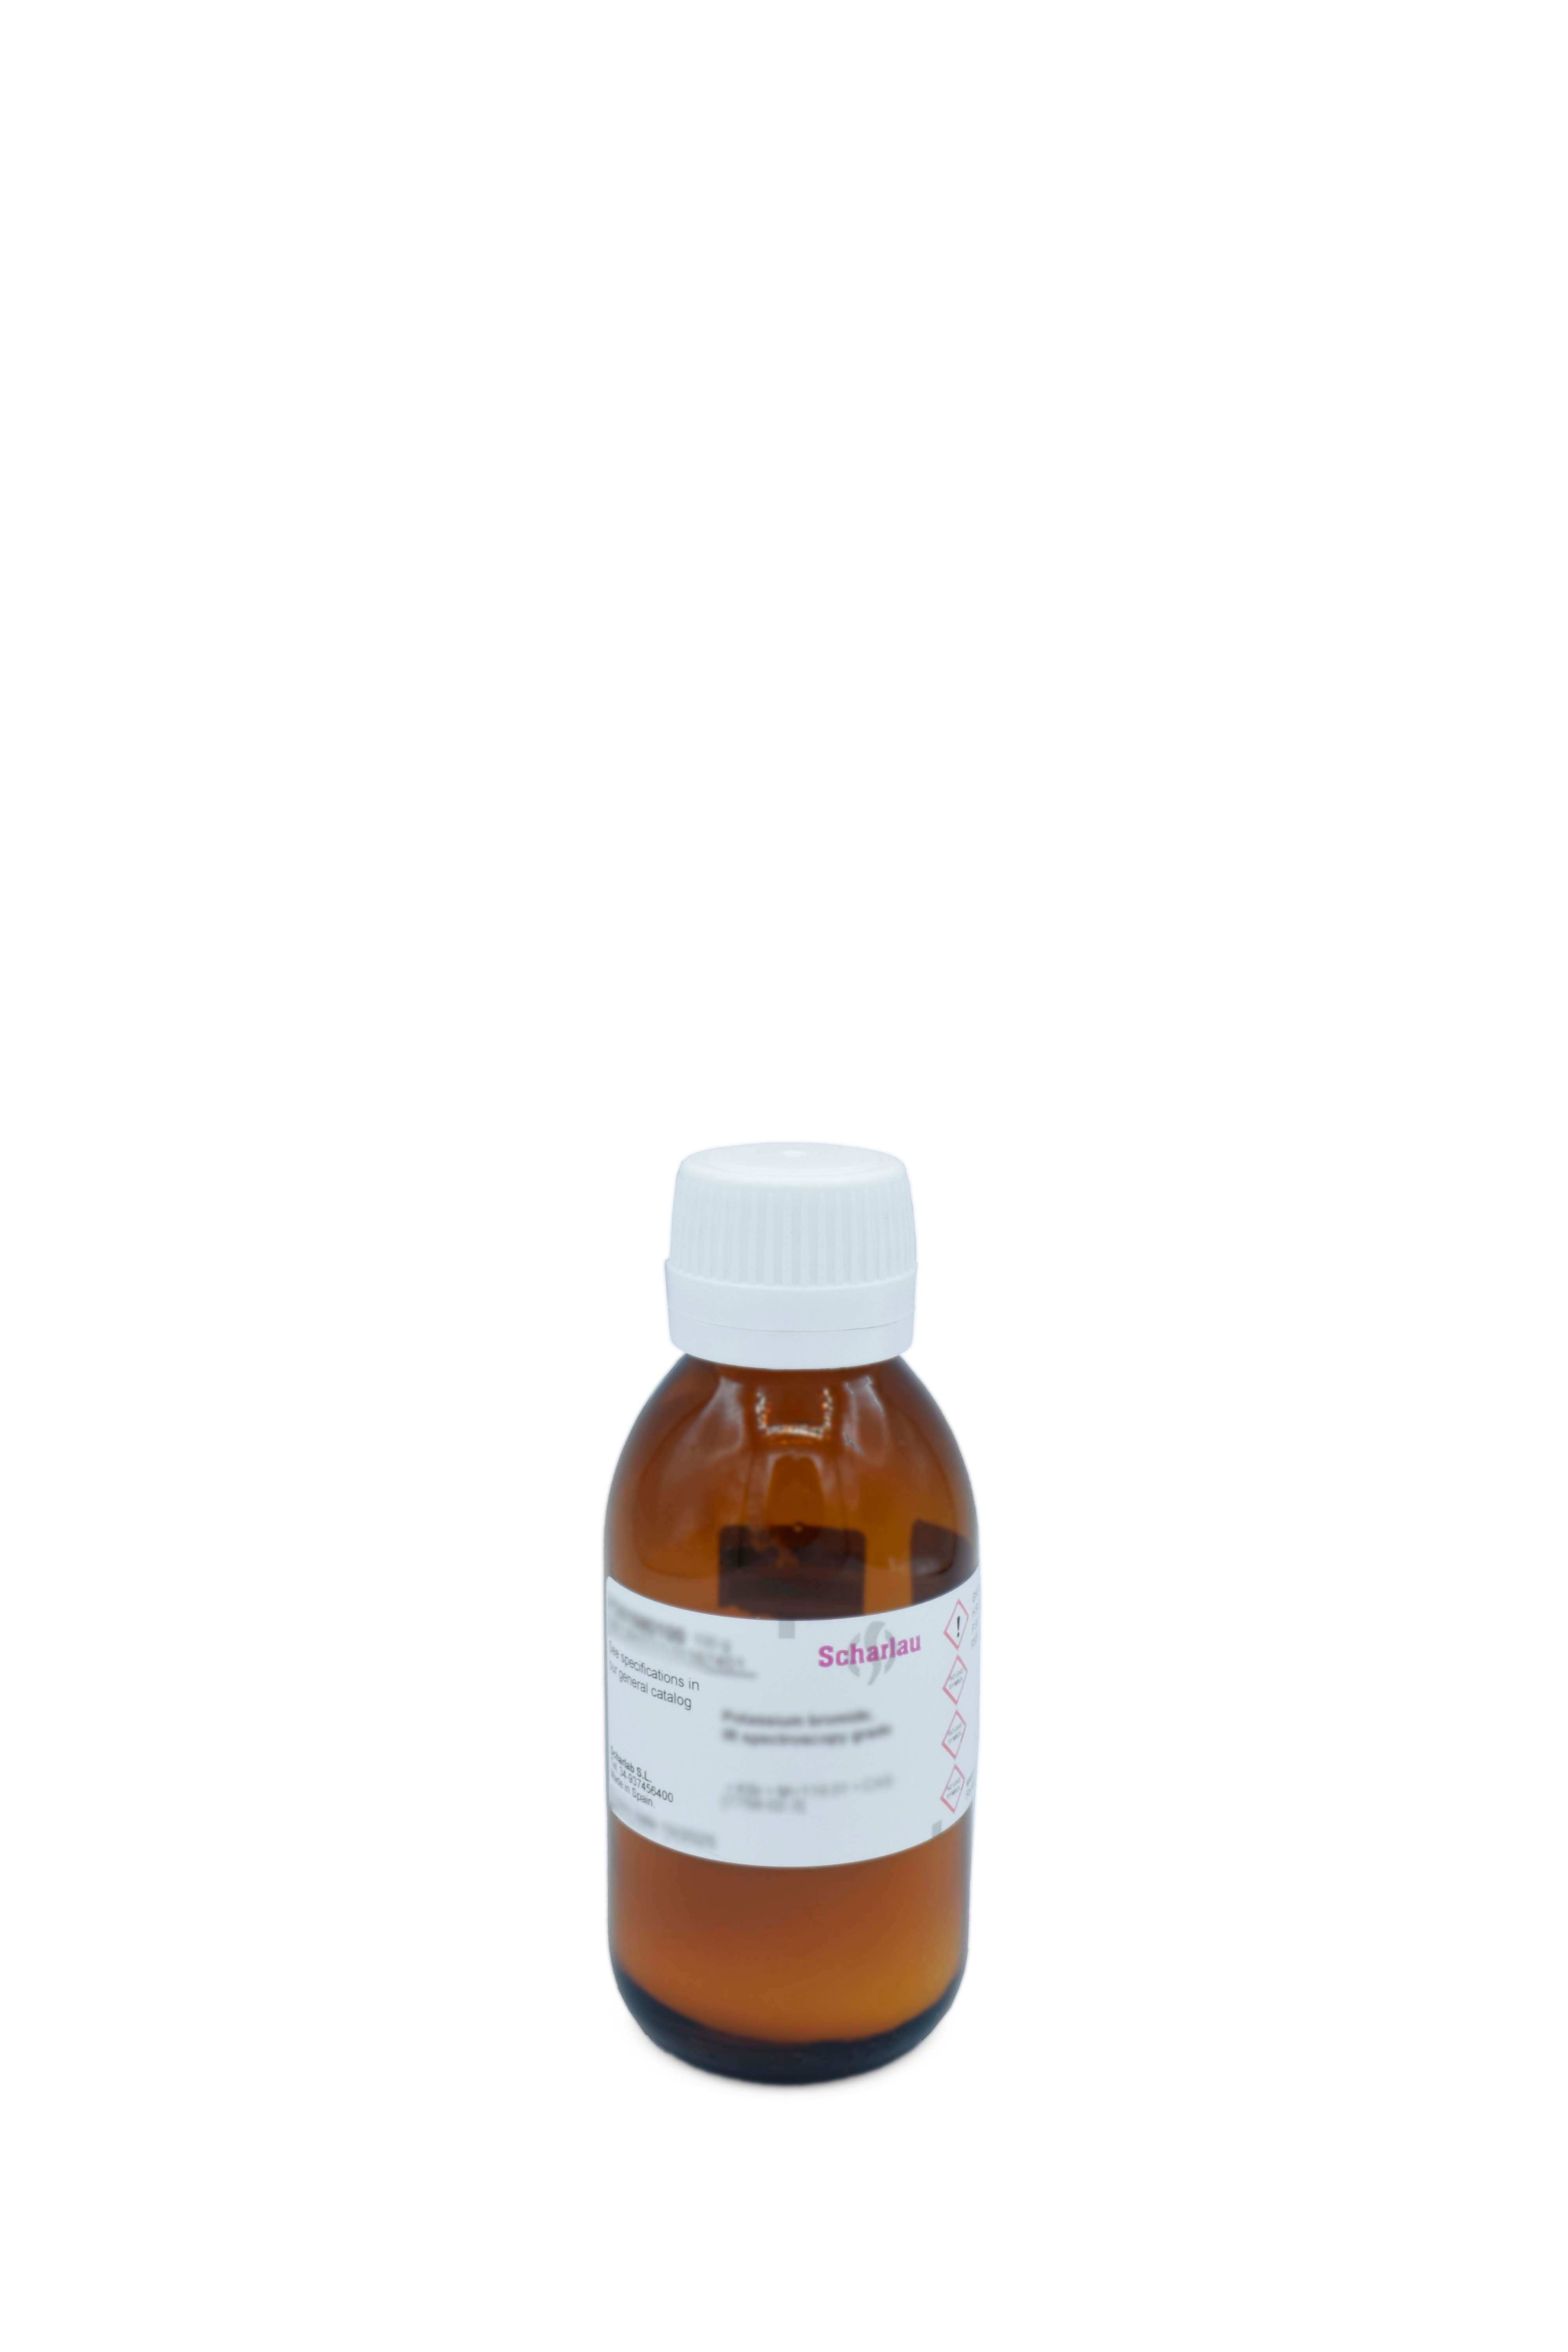 Ampicilina, sal sódica, para fines bioquímicos, D(-)-a-Aminobencilpenicilina, sal de sodio